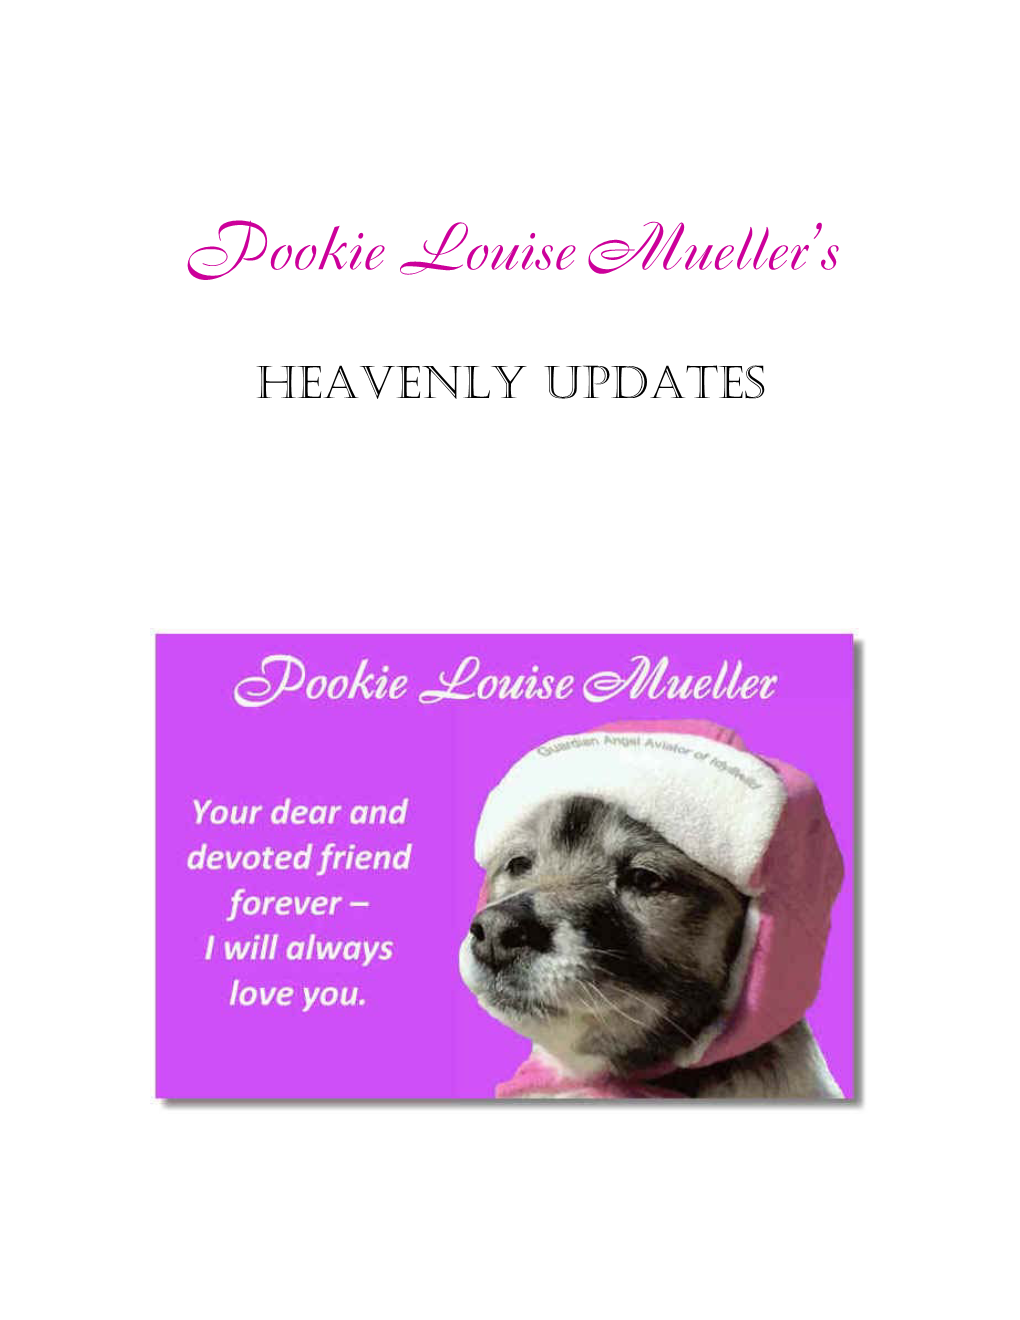 Pookie Louise Mueller's